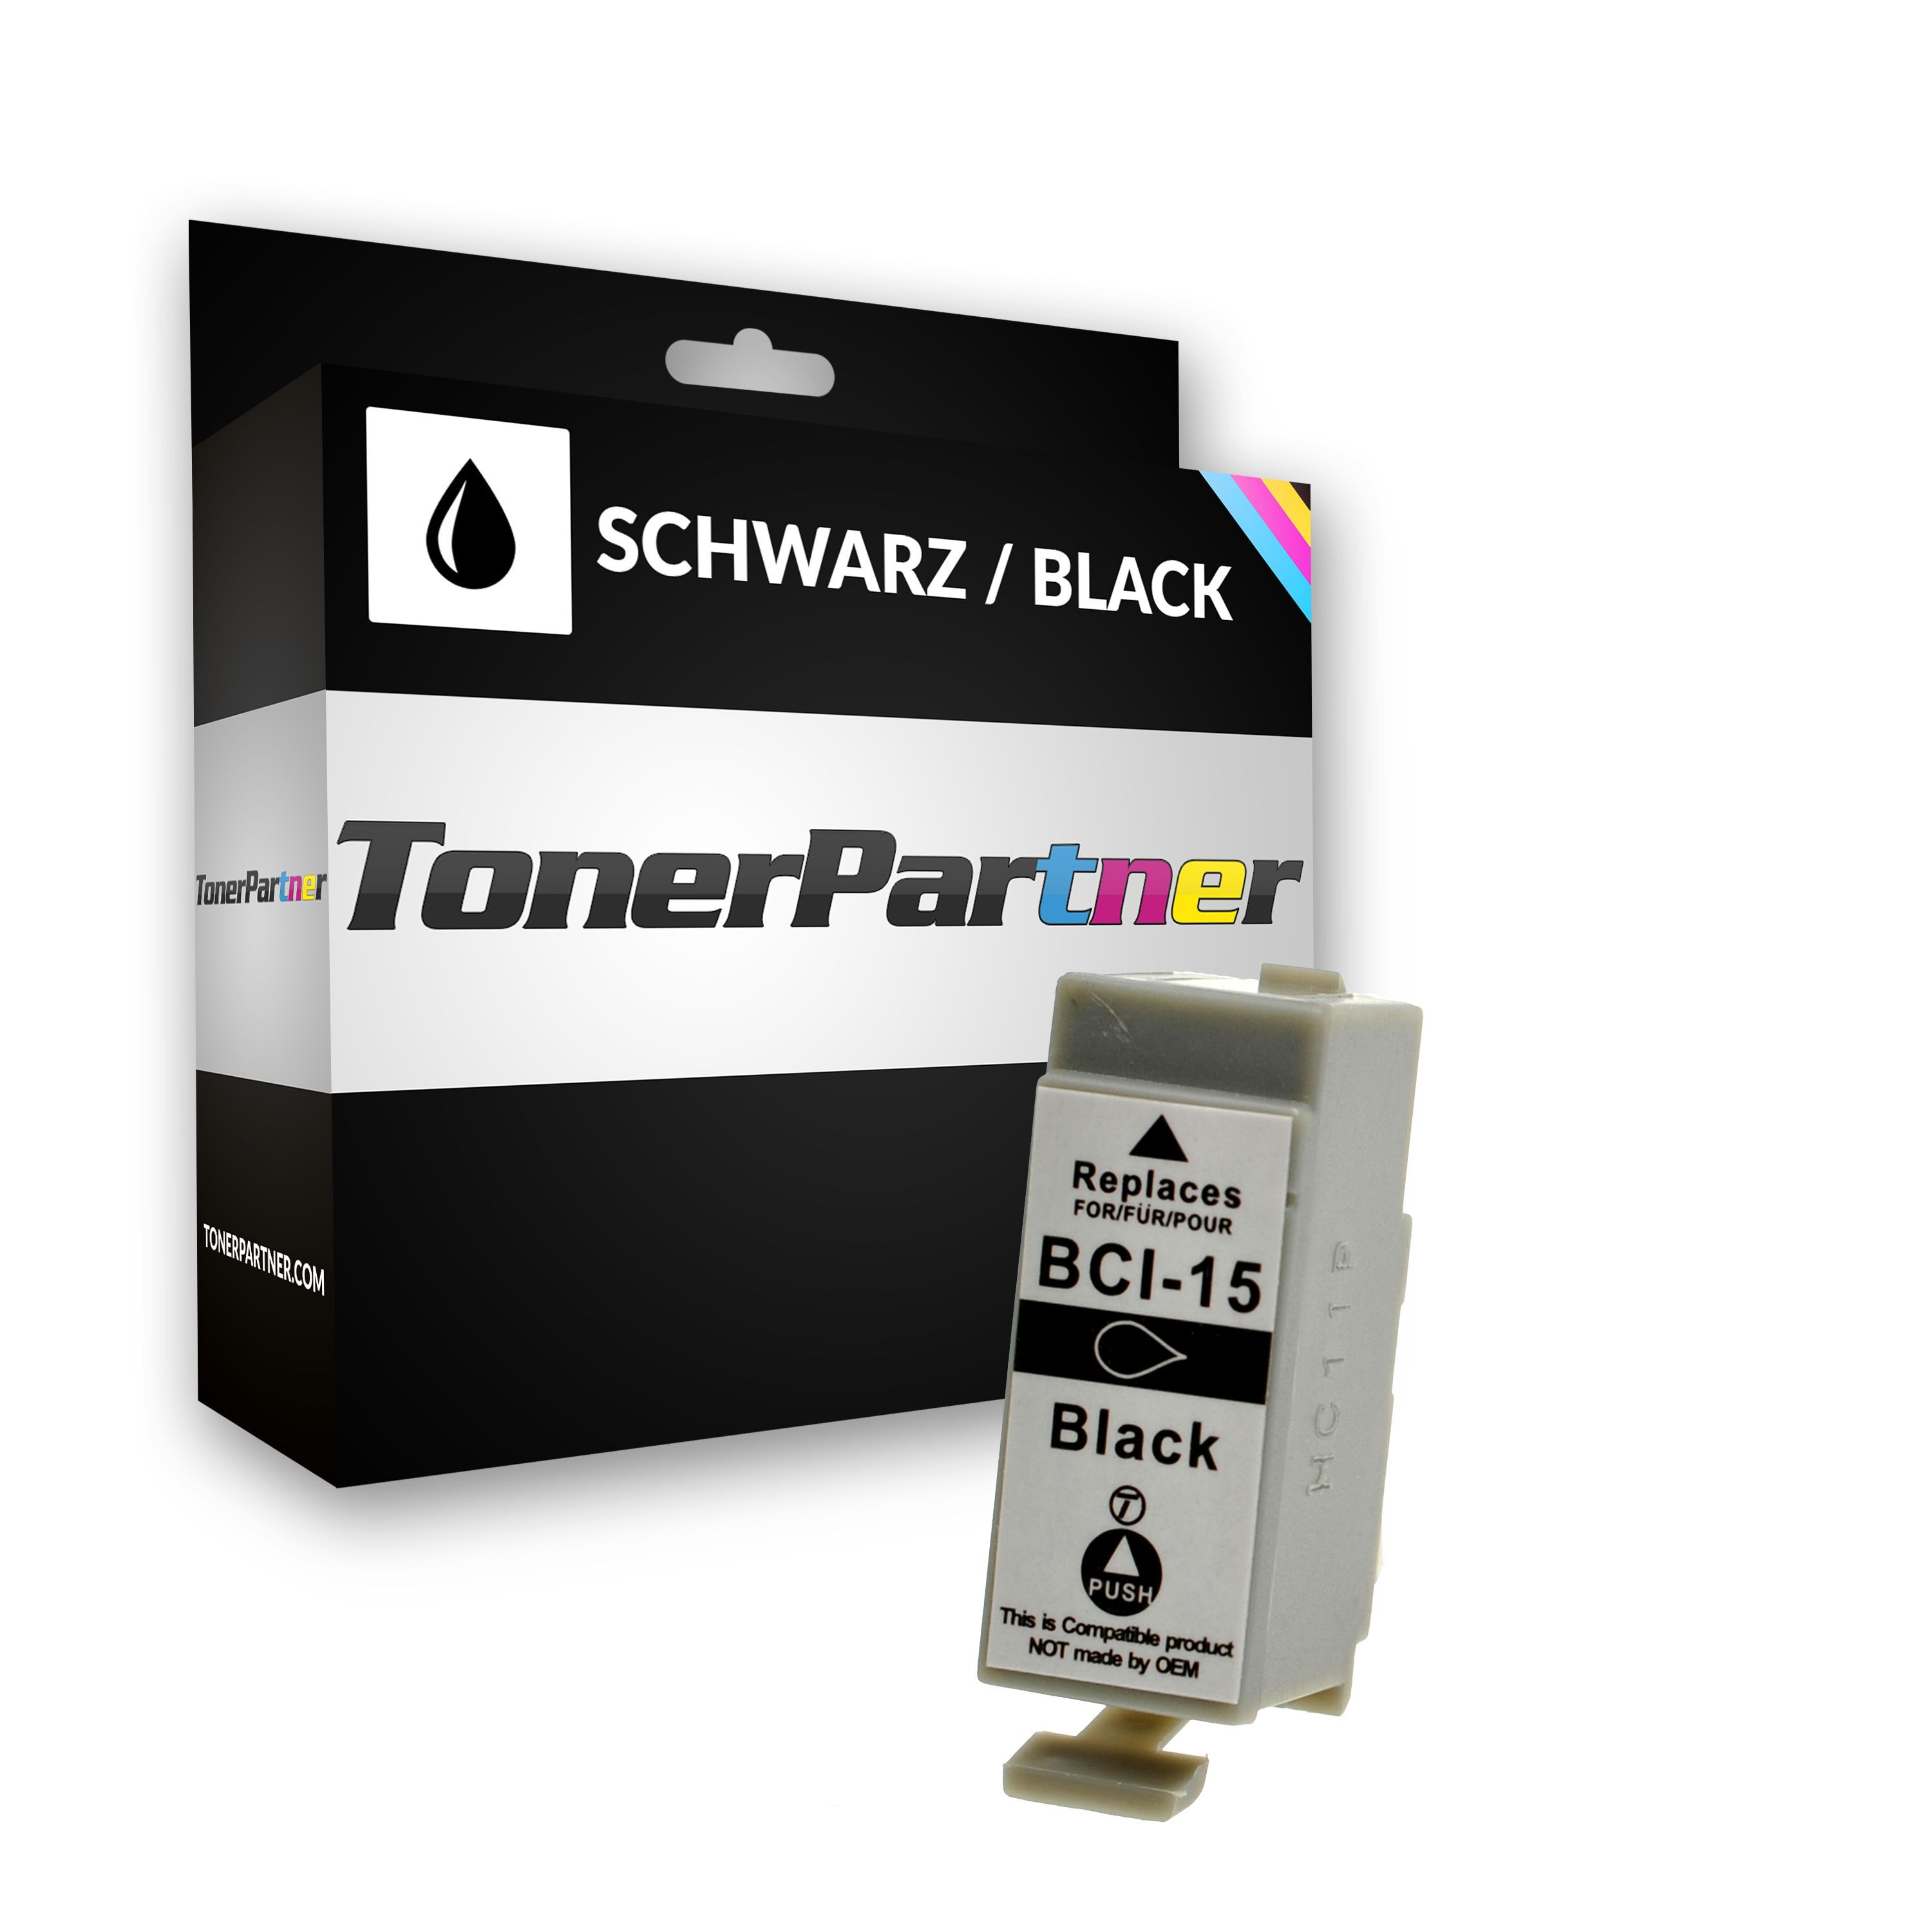 TonerPartner Kompatibel zu Canon I 70 Tintenpatrone (BCI-15 BK / 8190 A 002) schwarz, 100 Seiten, 13,0 Rp pro Seite, Inhalt: 5 ml von TonerPartner